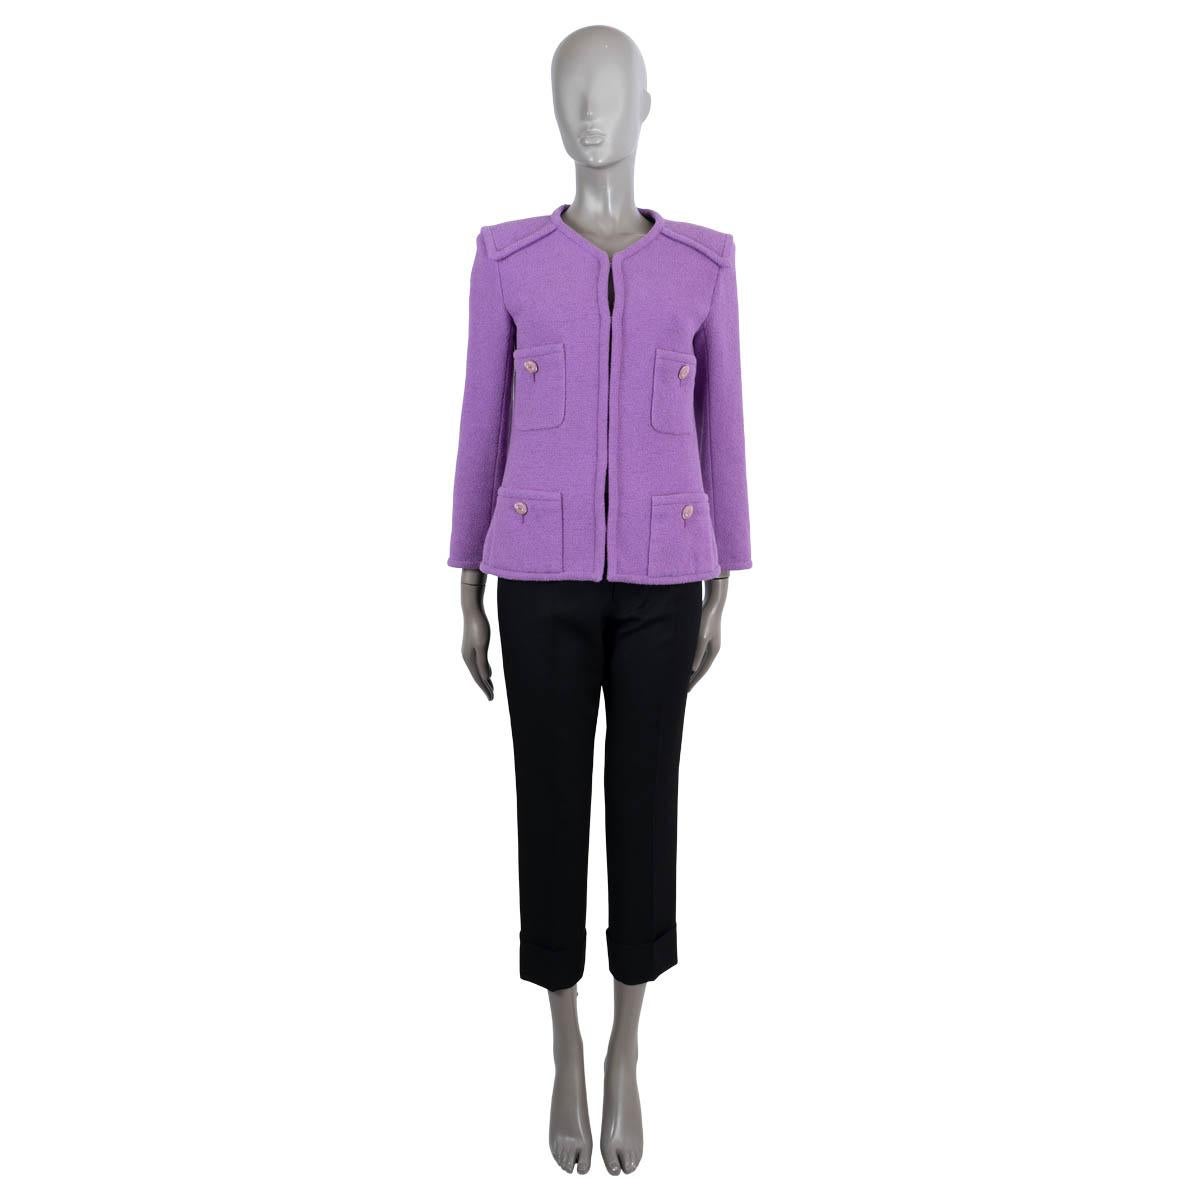 Veste en tweed sans col, 100% authentique de Chanel, en coton violet (100%). Il présente une légère encolure en V, quatre poches plaquées boutonnées et des empiècements sur les épaules. Il se ferme à l'aide de crochets dissimulés sur le devant et